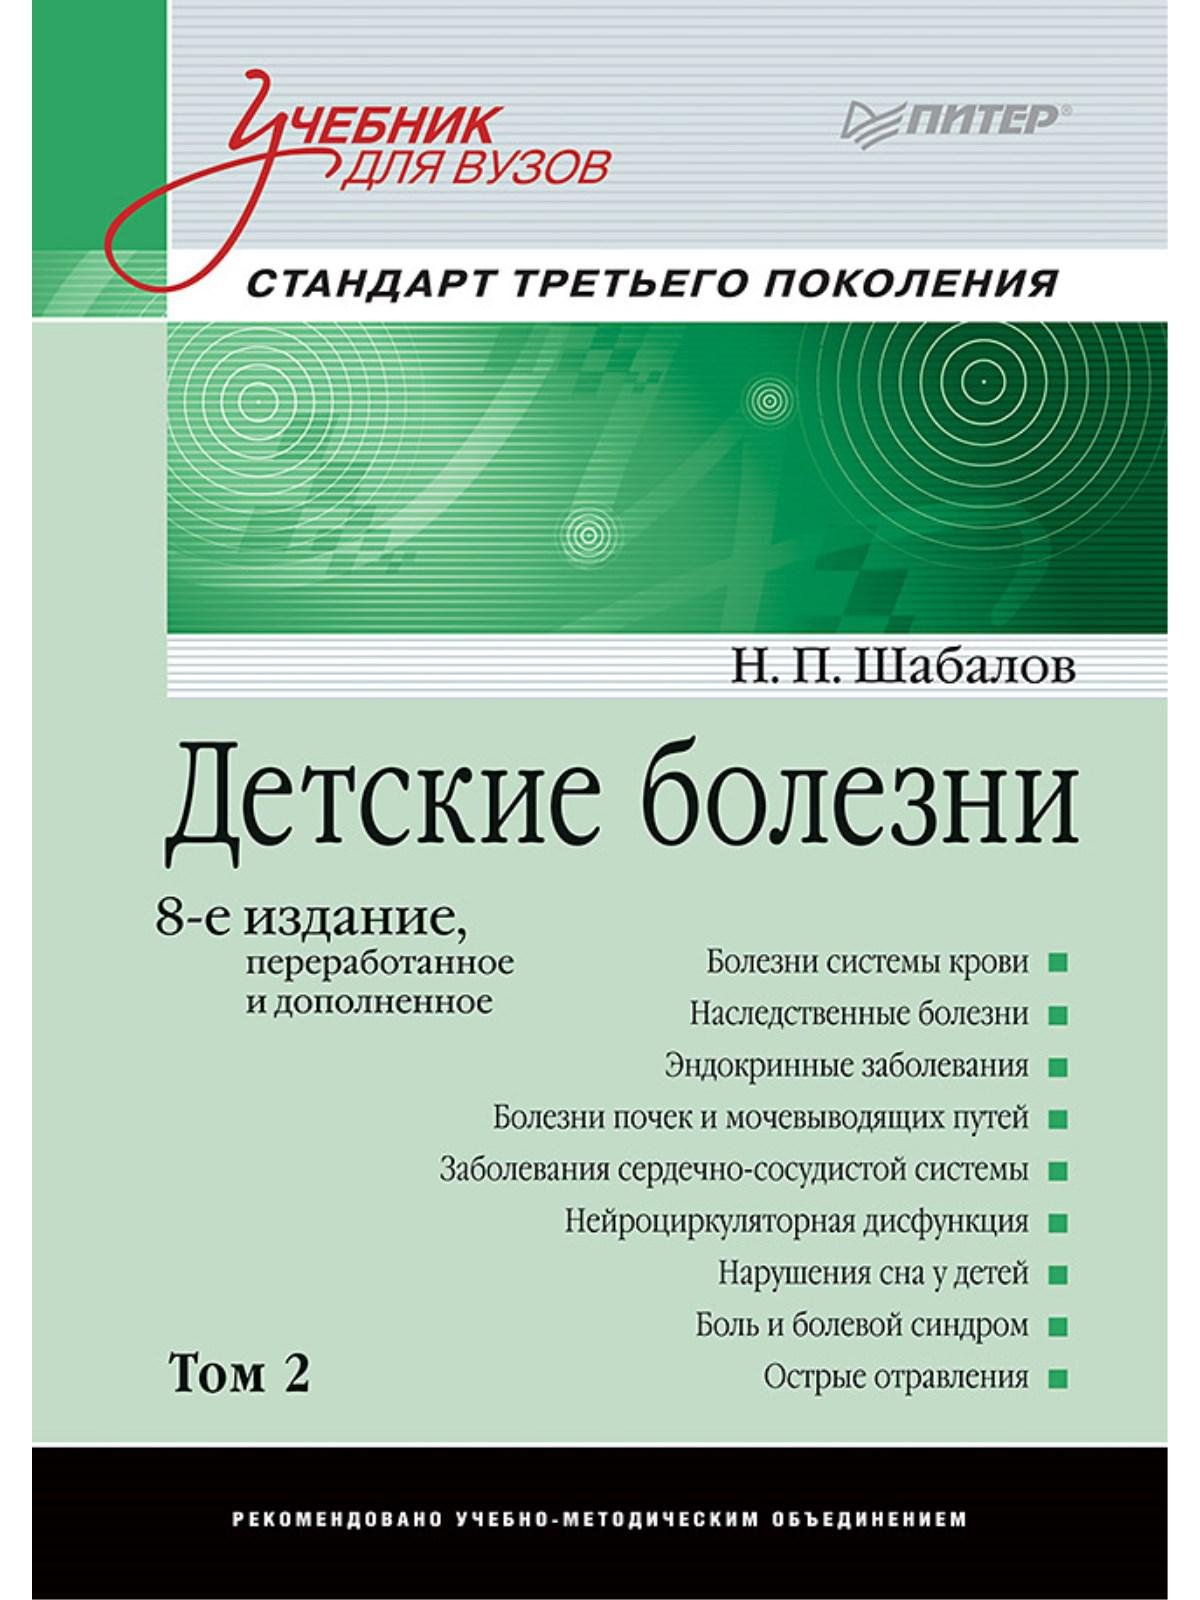 Шабалов Н. - Детские болезни: Учебник для вузов (том 2). 8-е изд. переработанное и дополненное